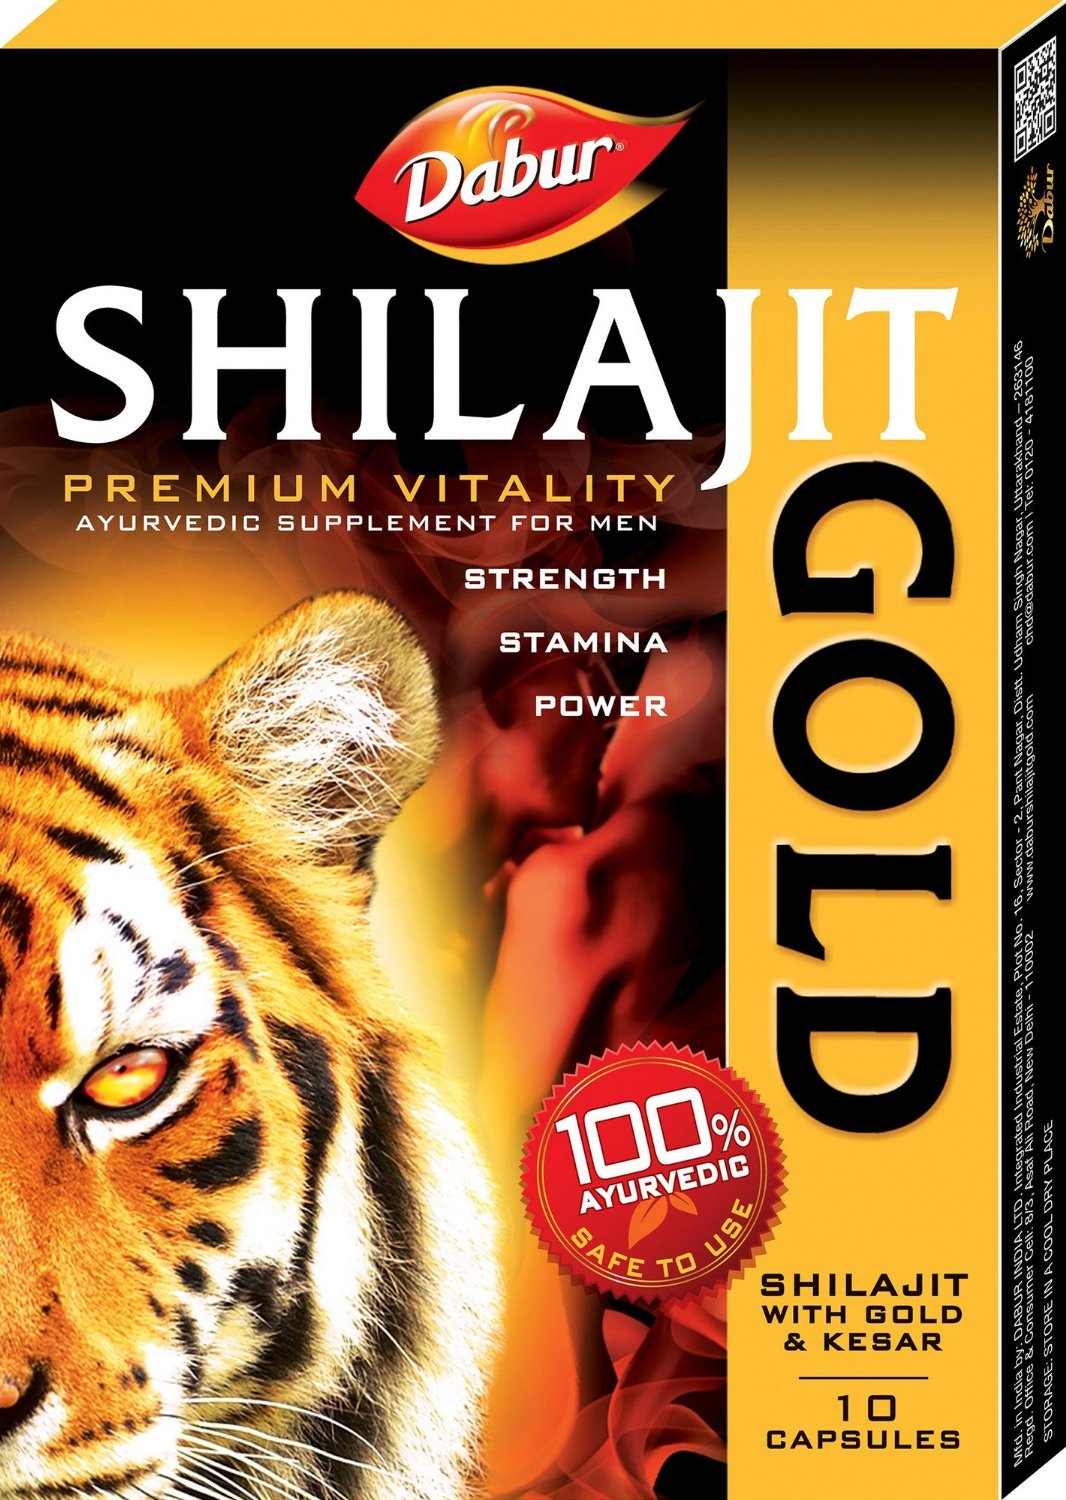 Shilajit Gold strip pack